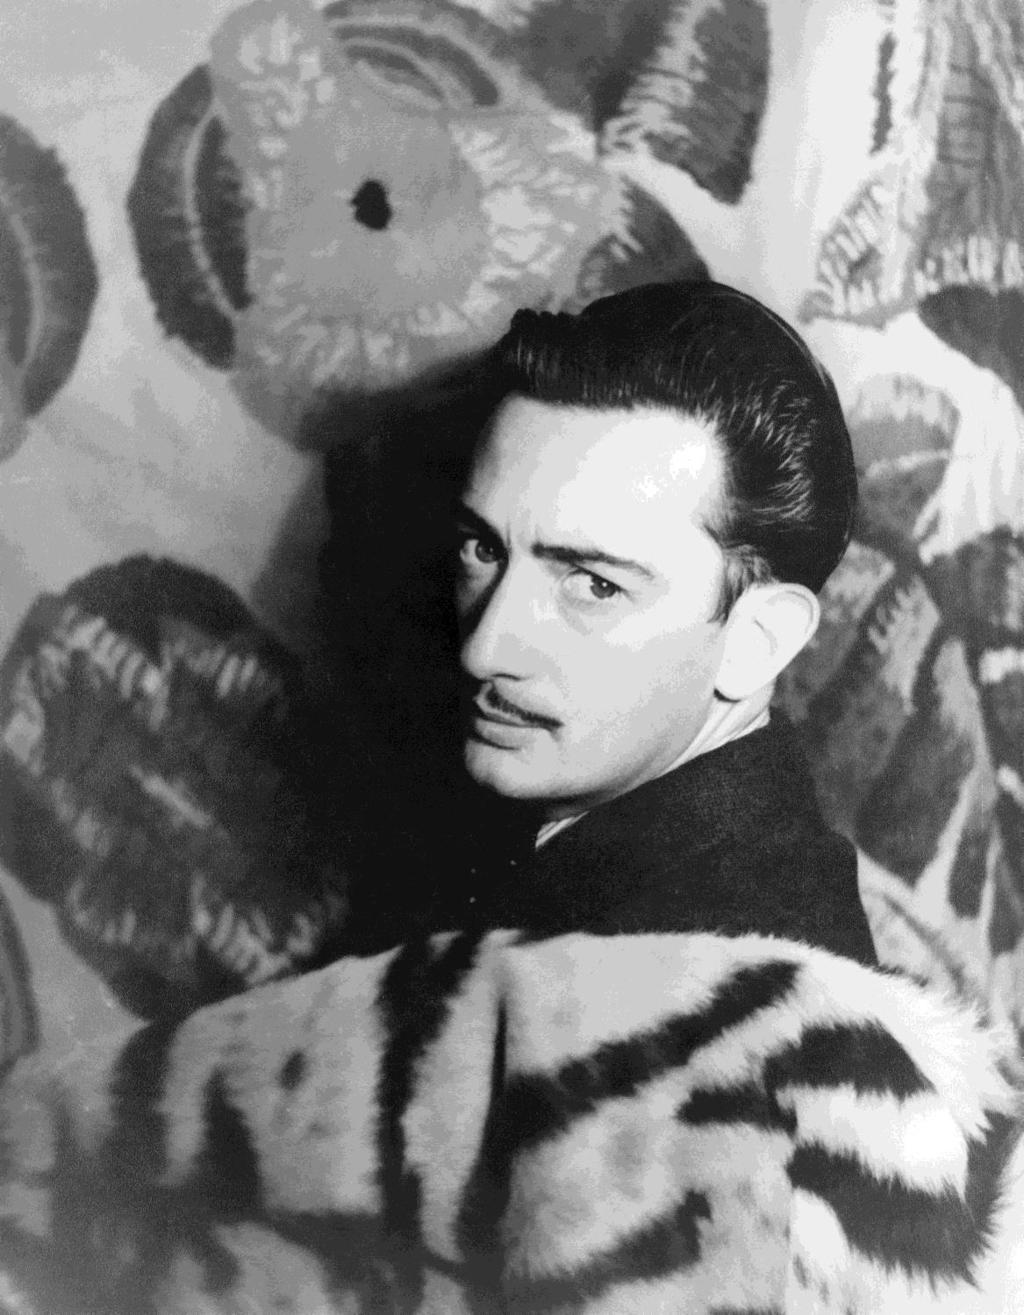 살바도르달리 (Salvador Dalí,